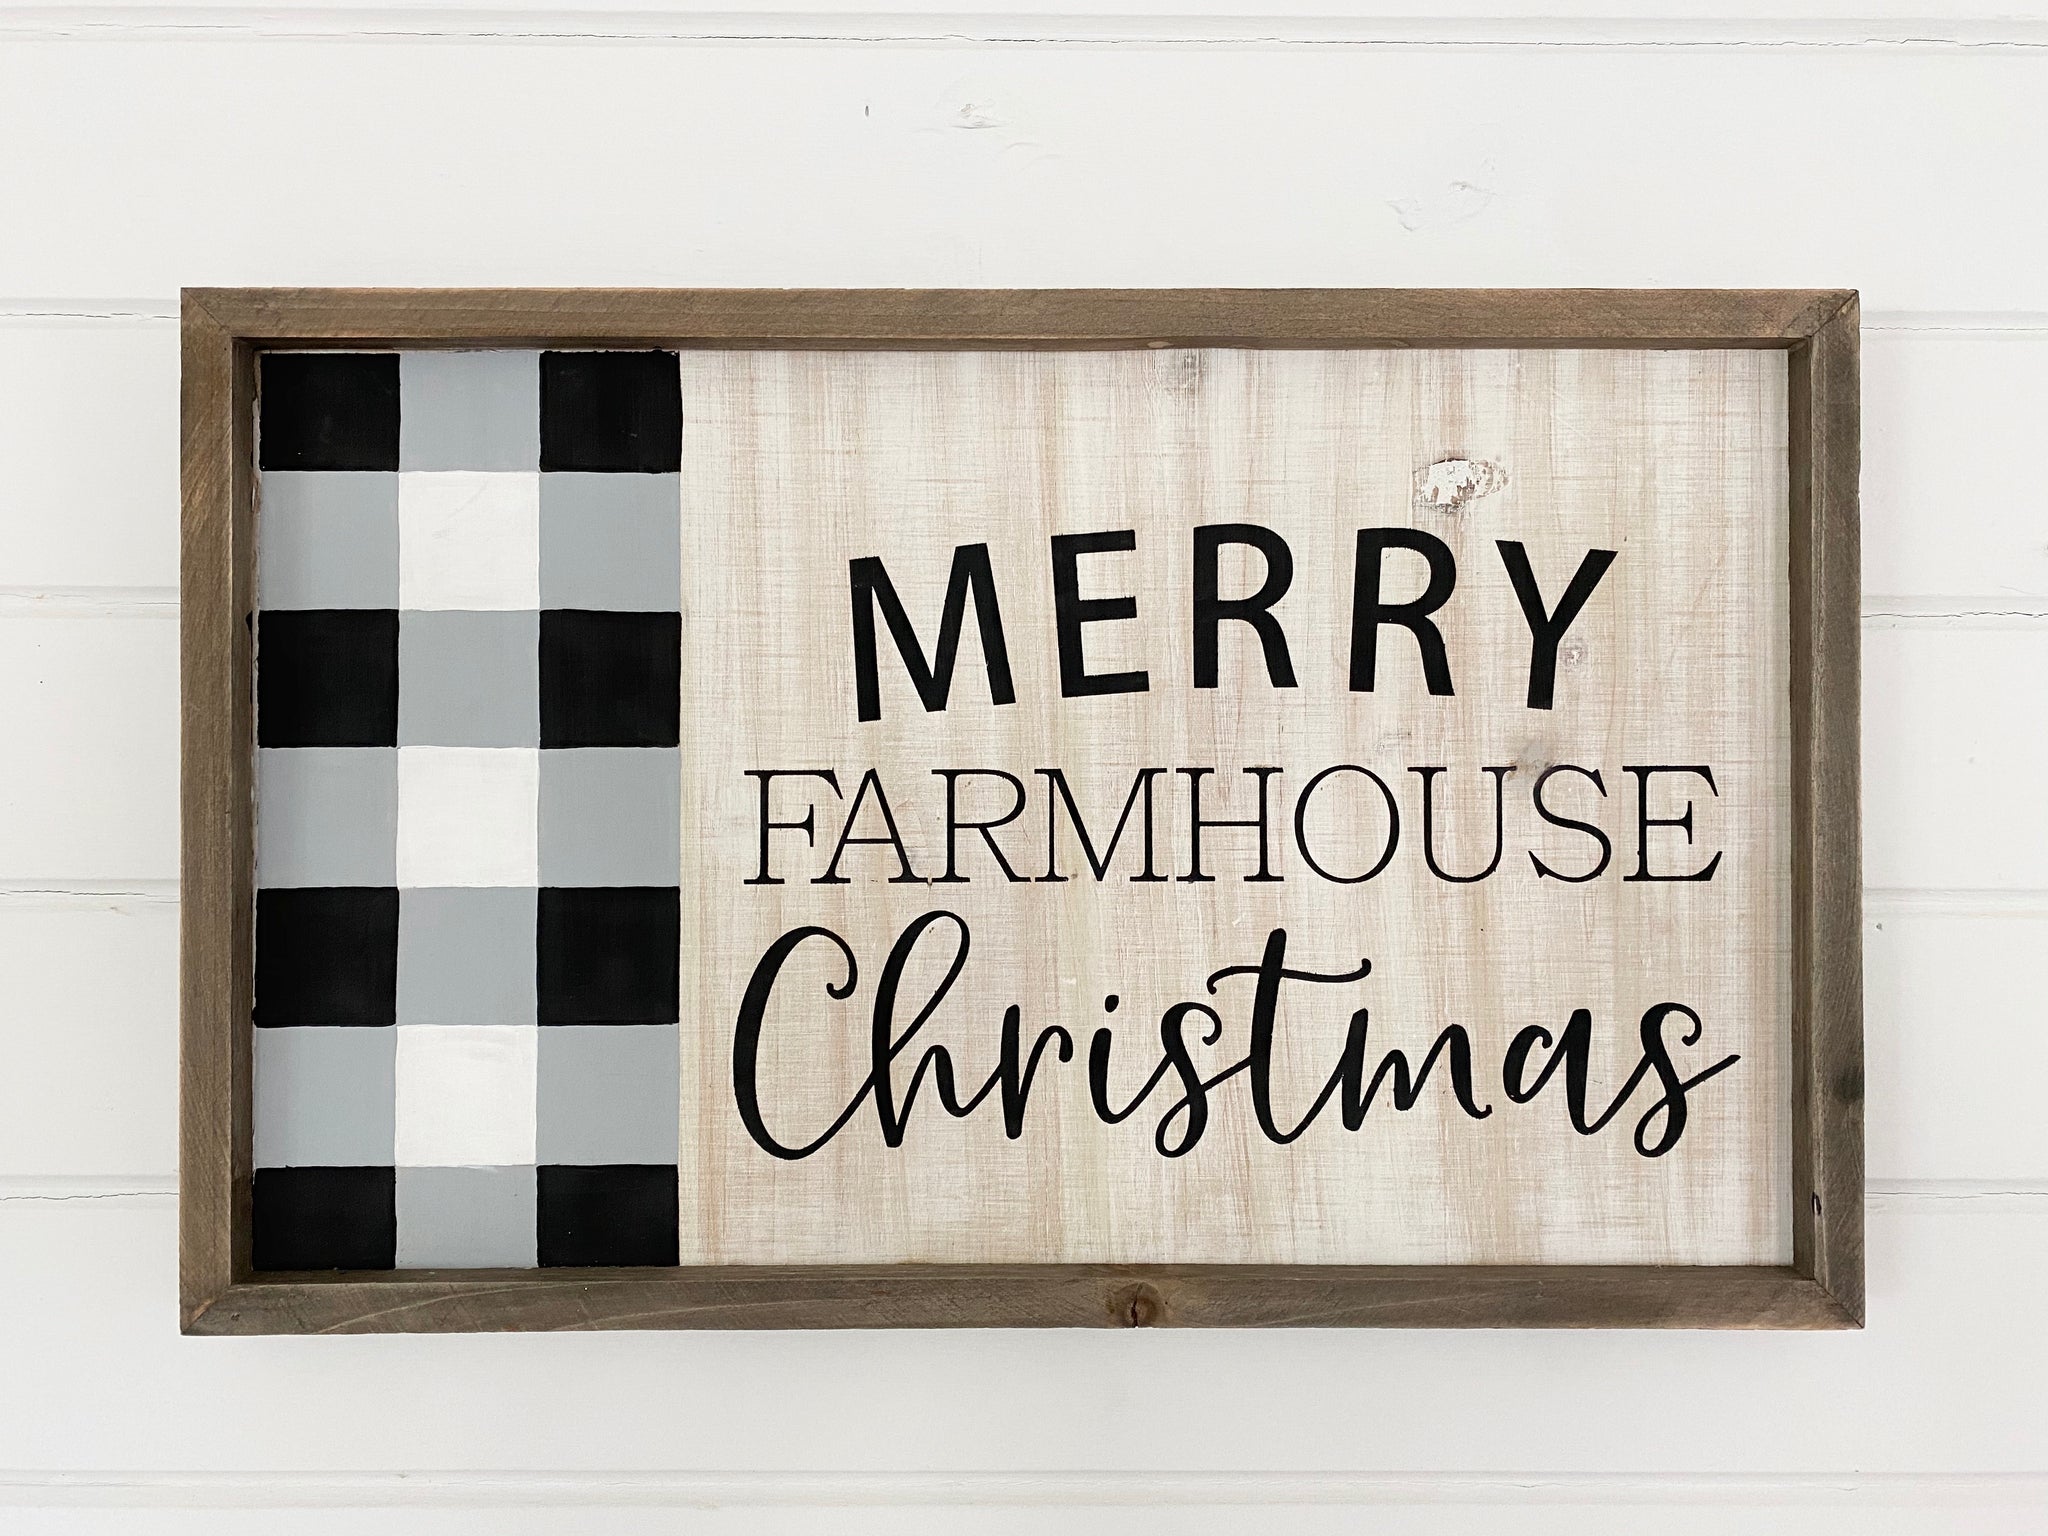 Merry farmhouse Christmas sign class